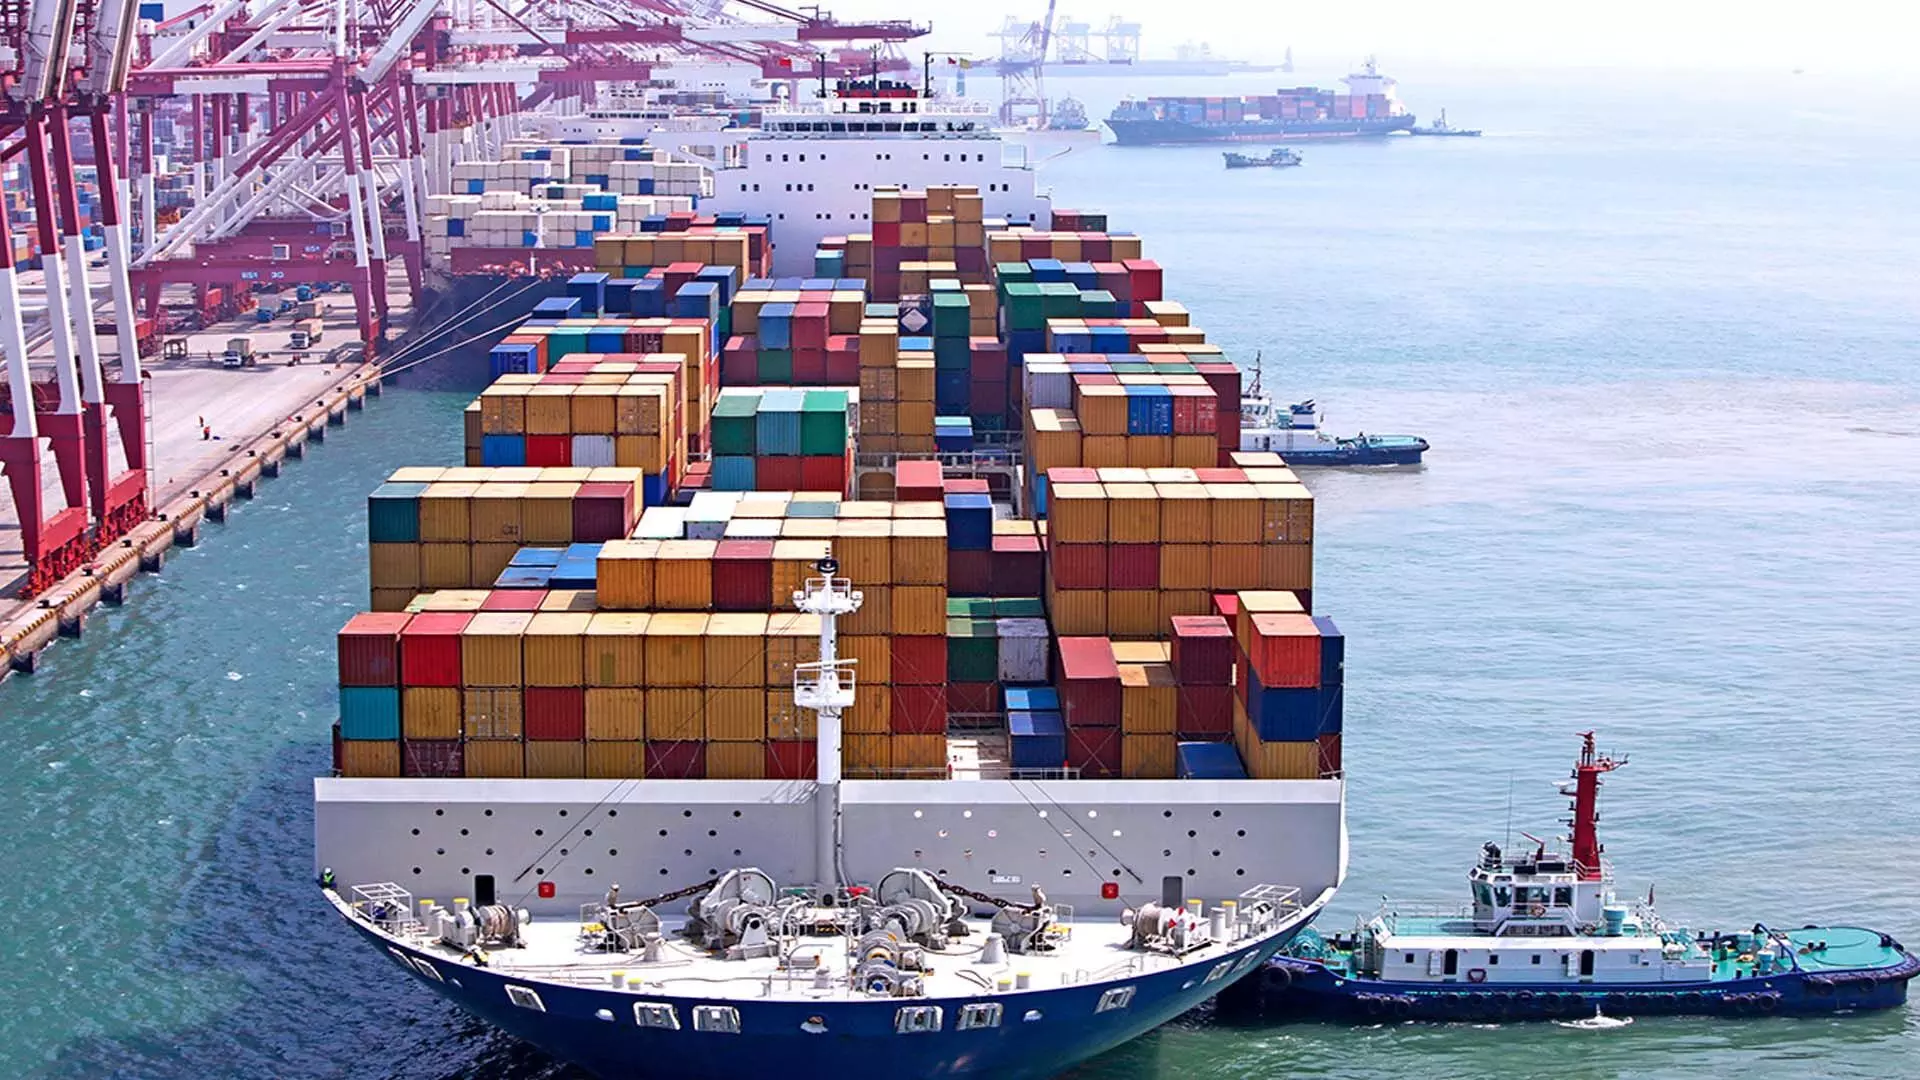 Mumbai News: जून में भारत का निर्यात 2.55% बढ़कर 35.20 अरब डॉलर पर पहुंचा